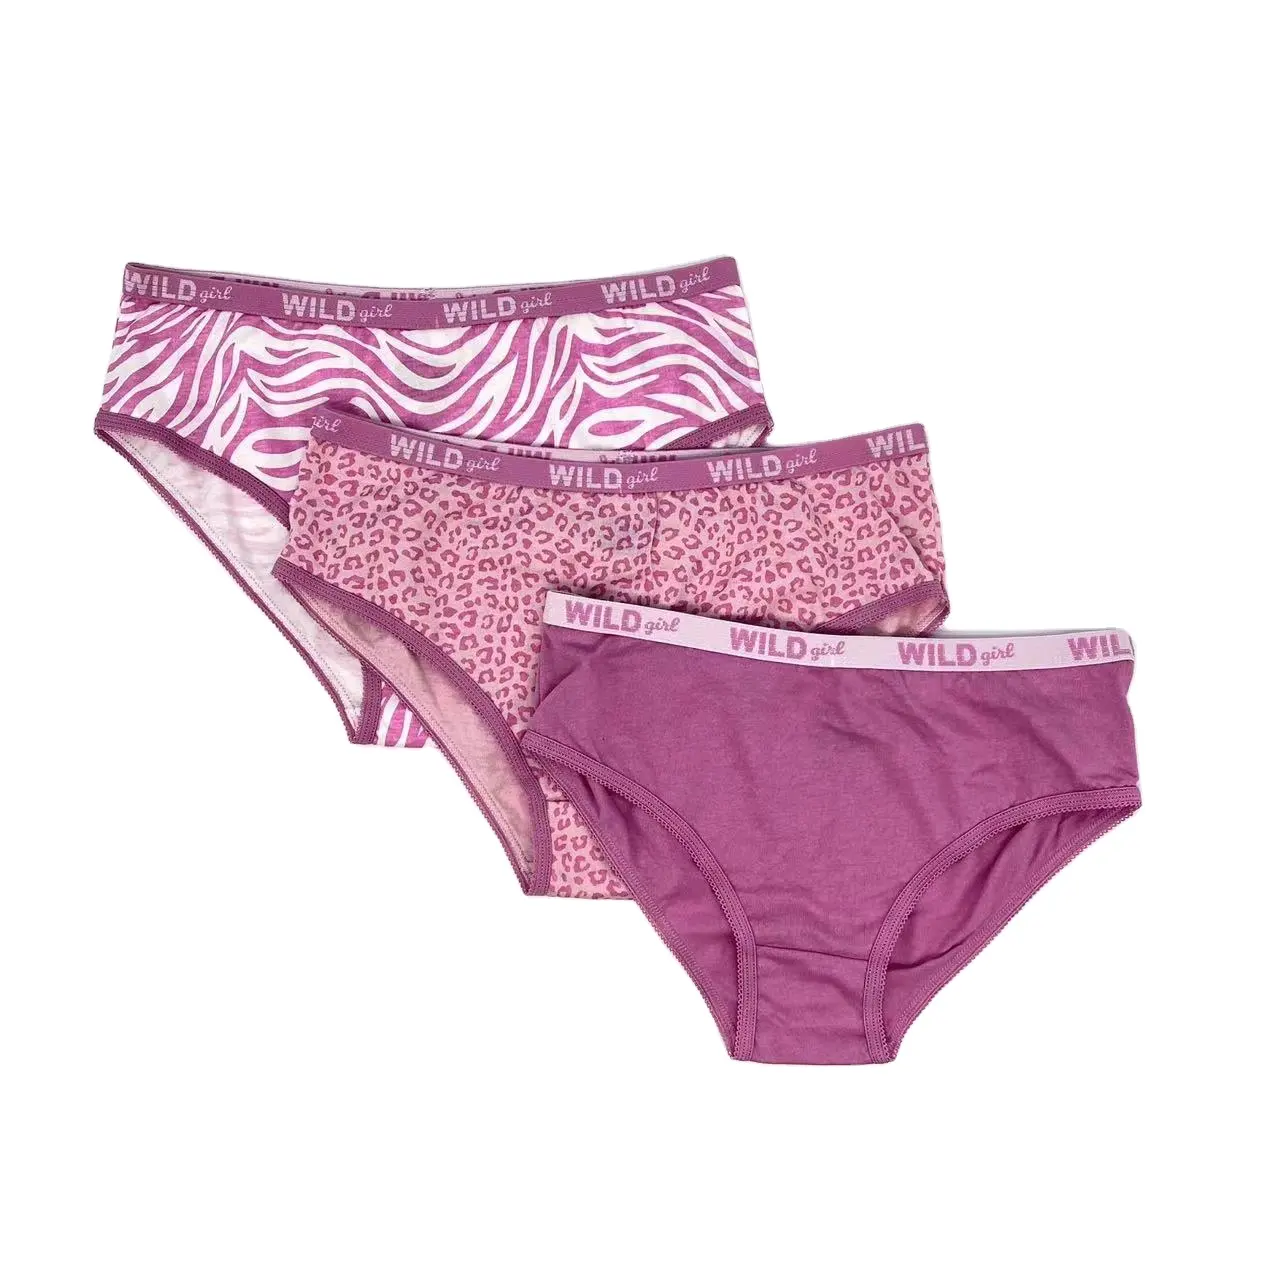 Roupa íntima infantil, calcinha macia para meninas, roupa íntima, conjuntos com calças rosa